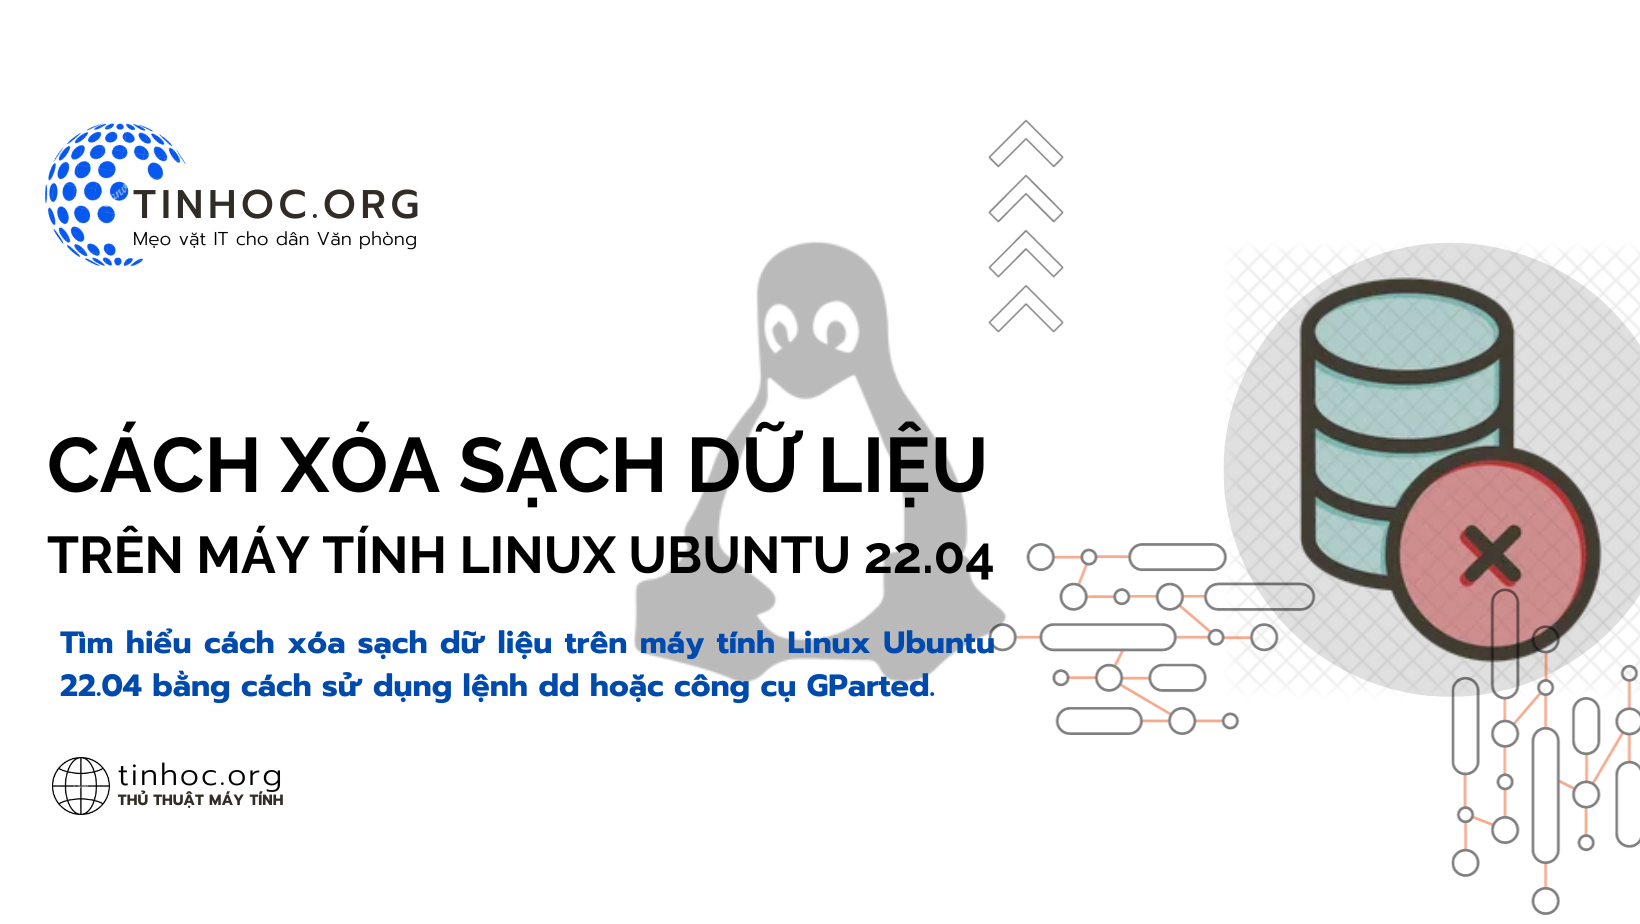 Cách xóa sạch dữ liệu trên máy tính Linux Ubuntu 22.04